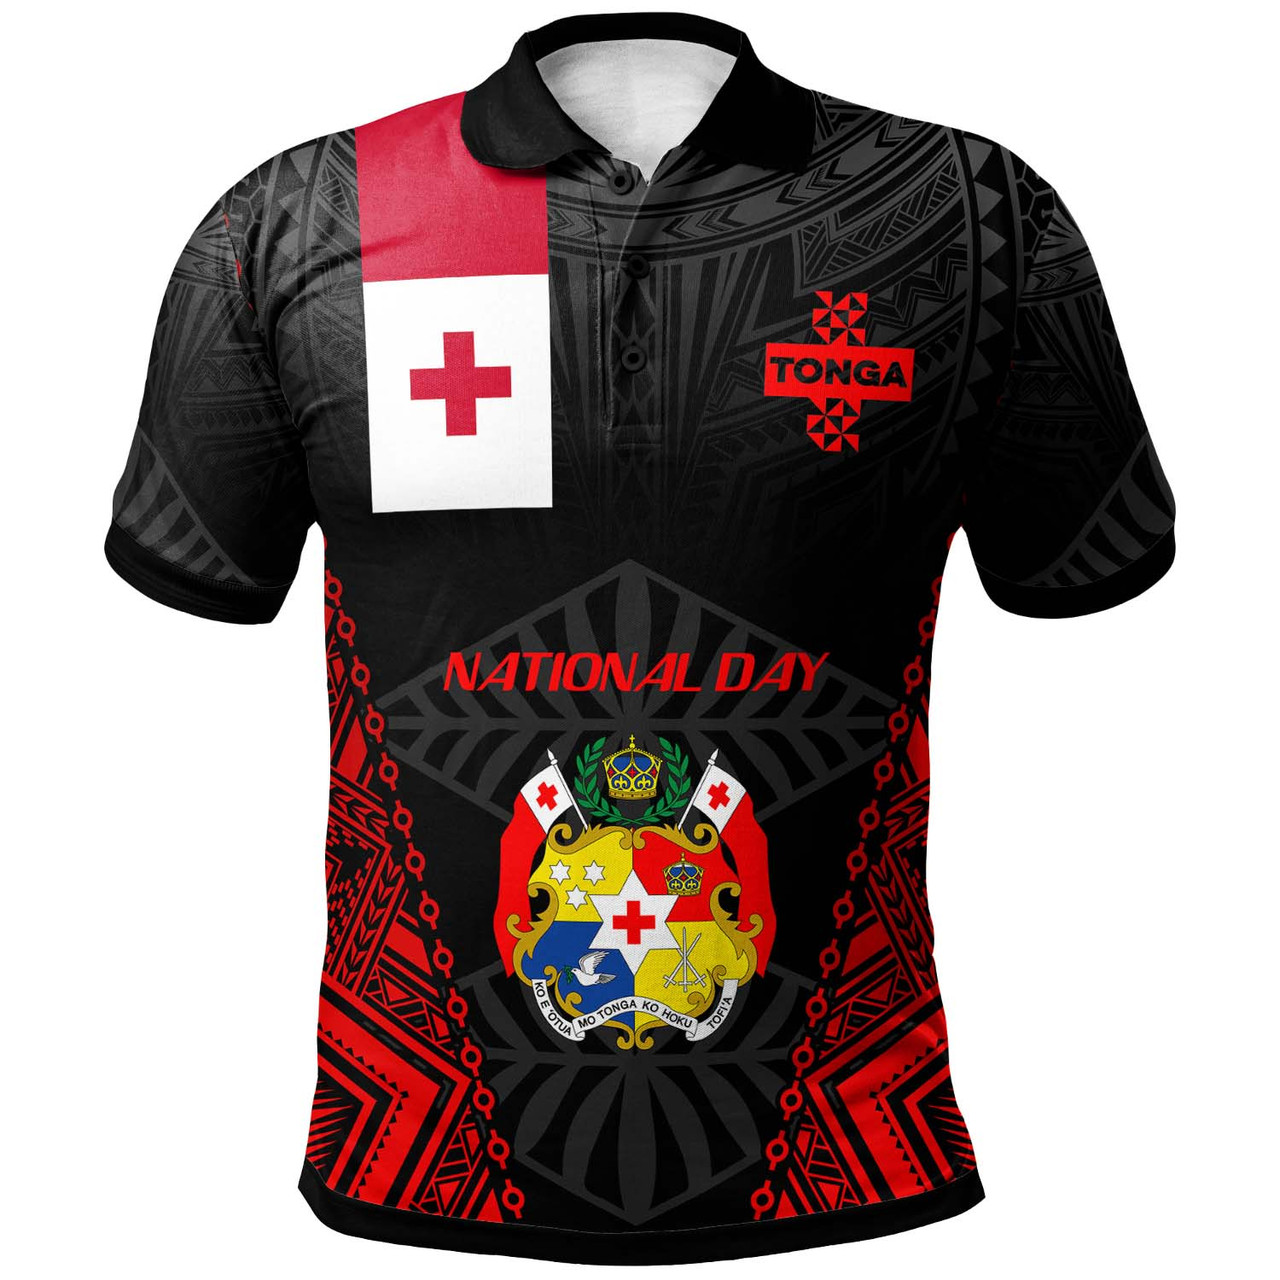 Tonga Polo Shirt - Custom National Day Tonga Polynesian Polo Shirt